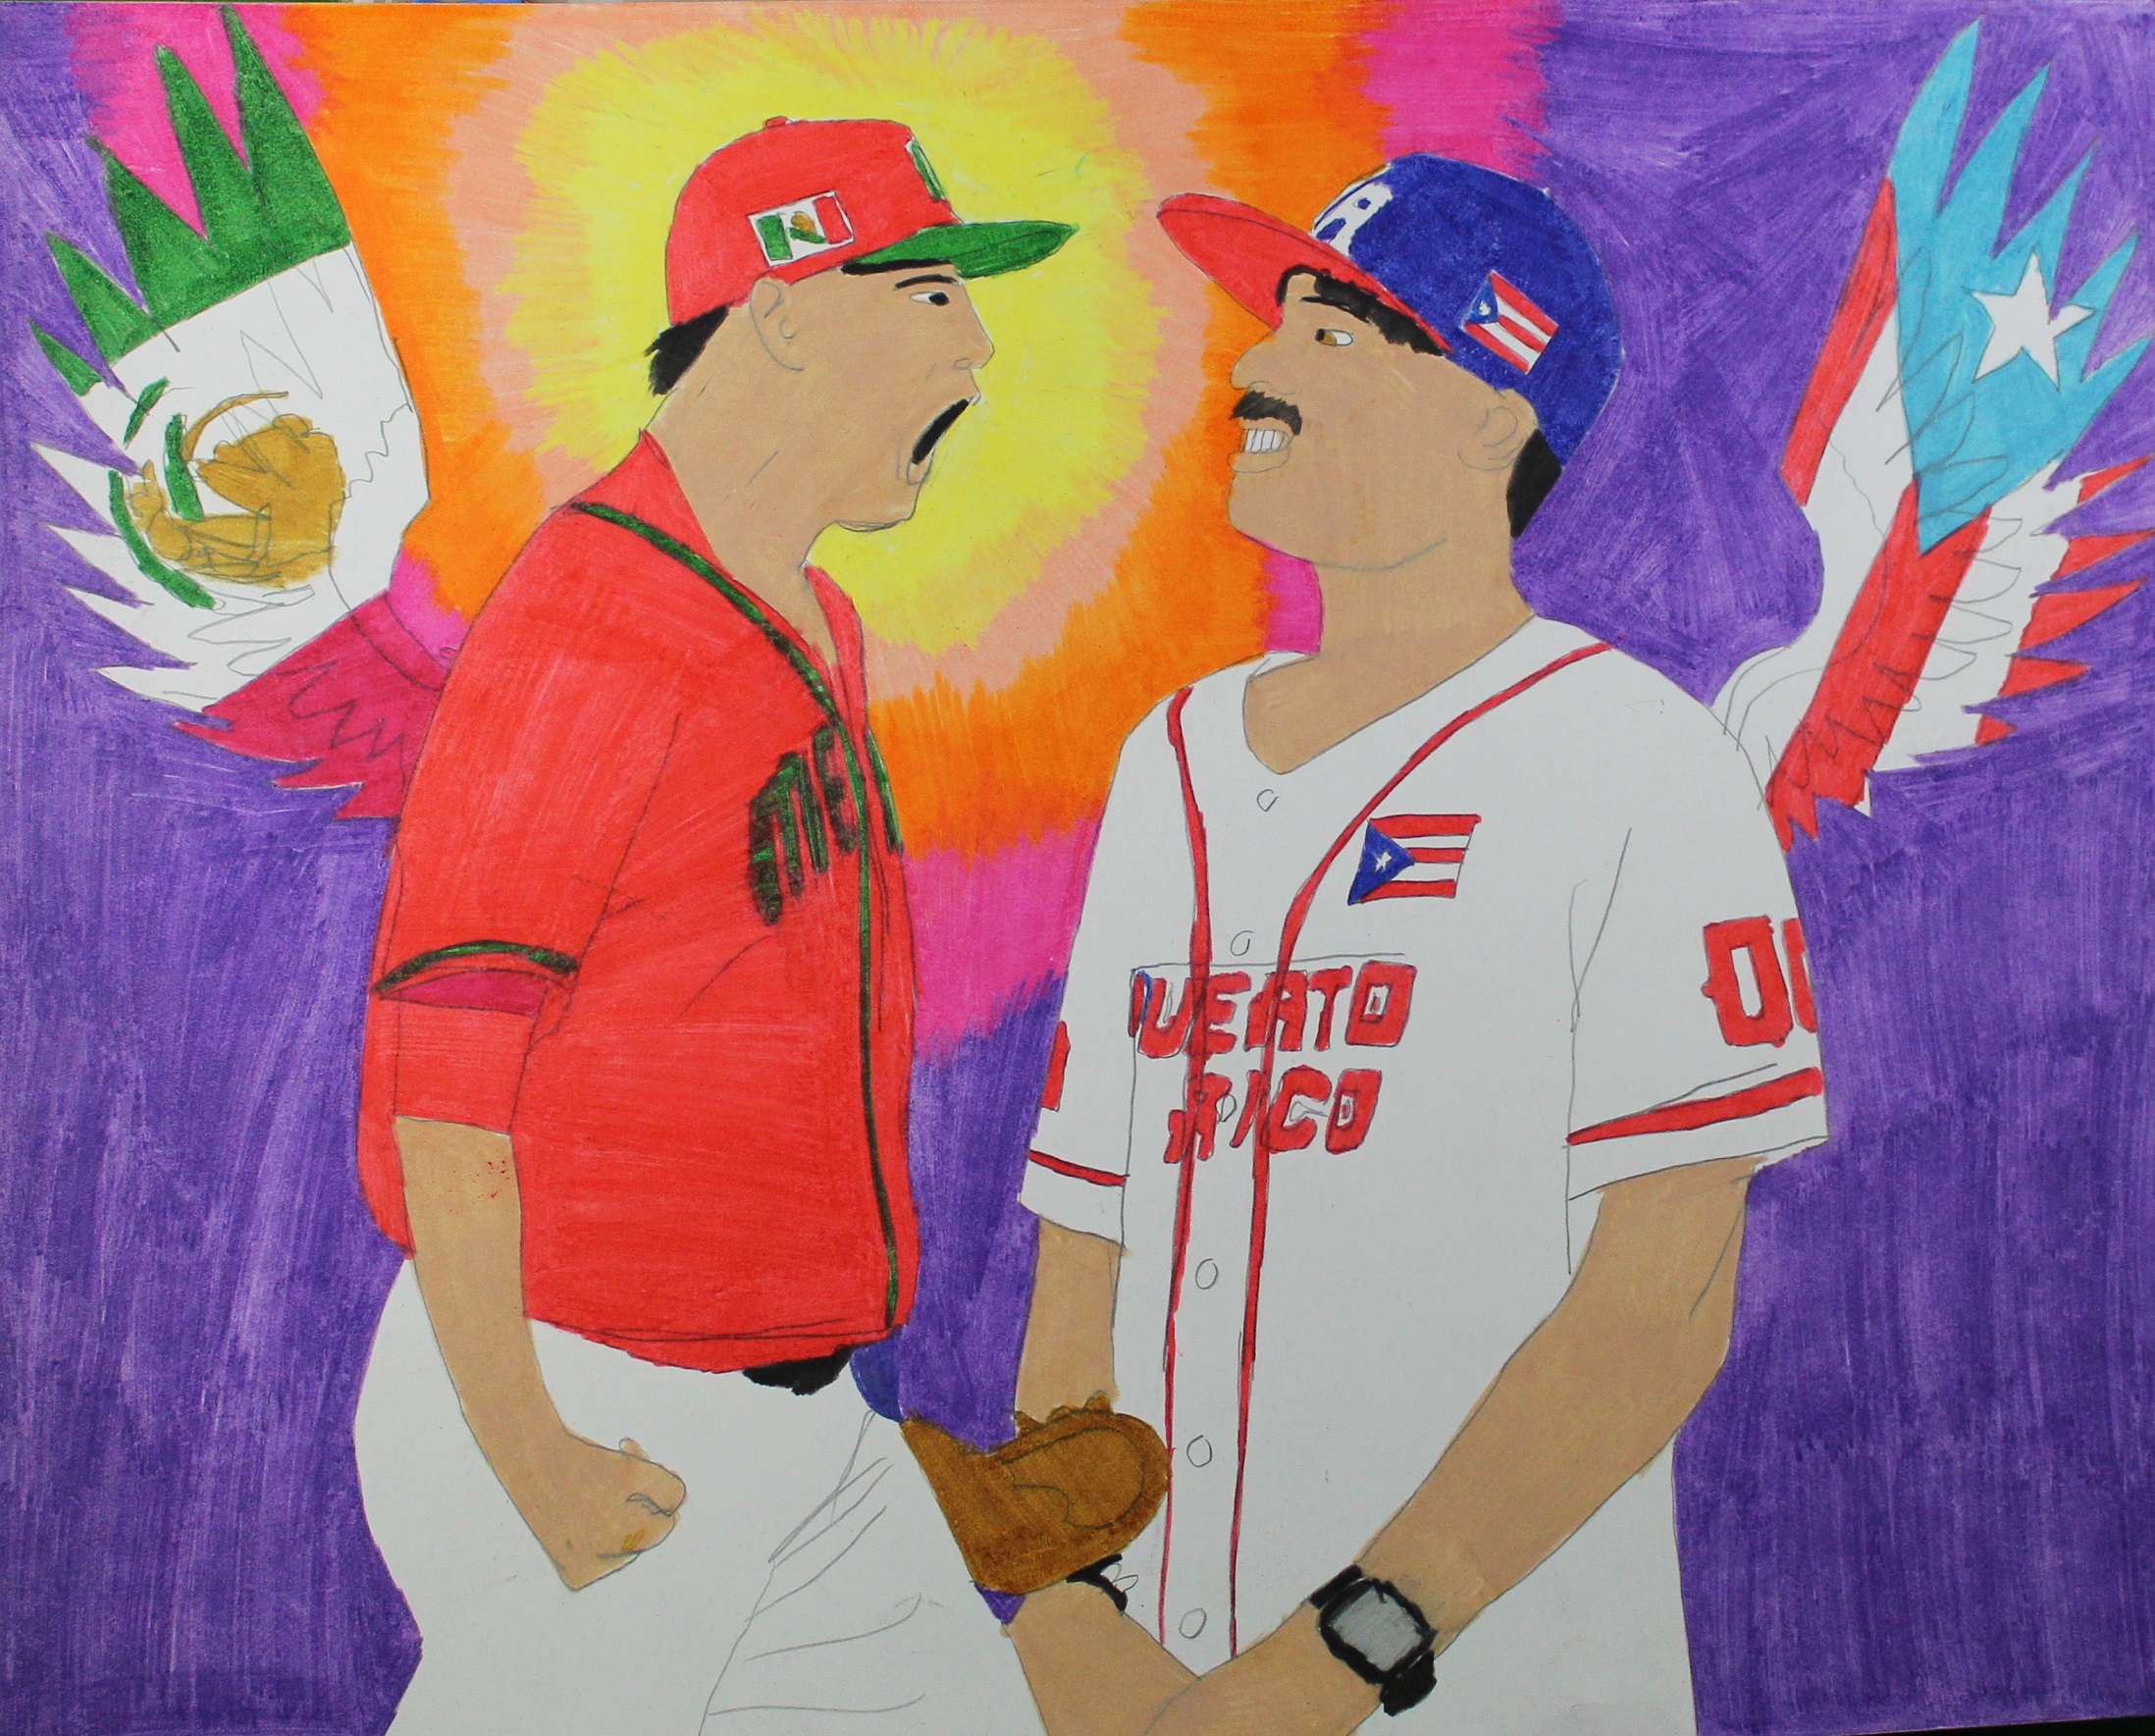 Mexico and Puerto Rico baseball face to face